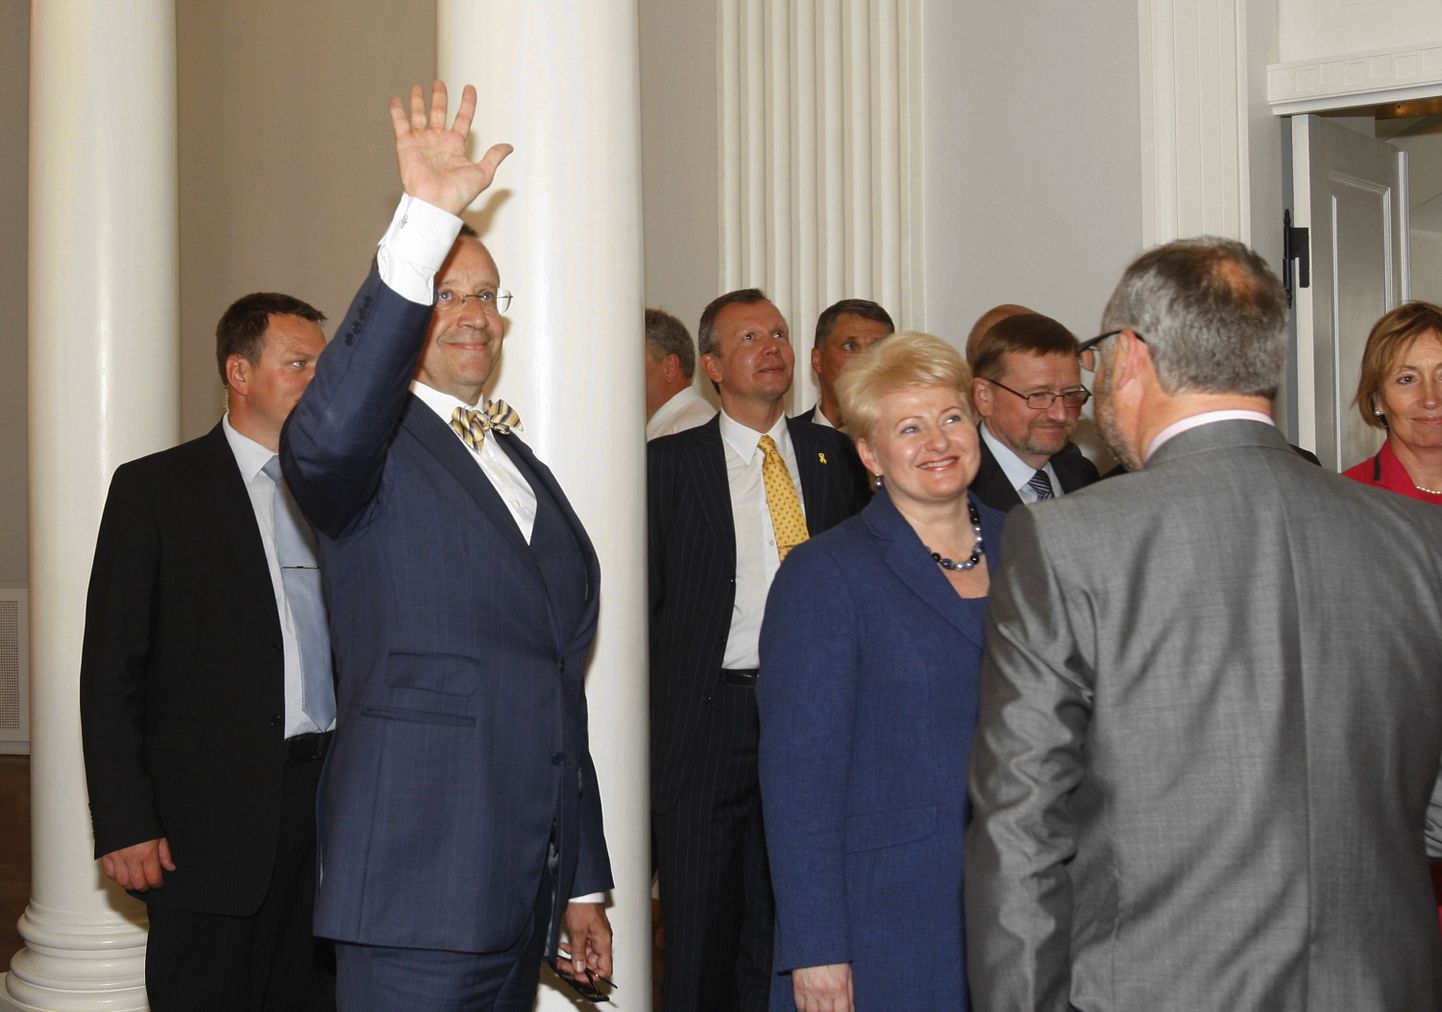 Leedu president Dalia Grybauskaite ning tema Eesti kolleeg Toomas Hendrik Ilves astusid sisse Tartu Ülikooli lõpuaktusele ning tervitasid lõpetajaid.